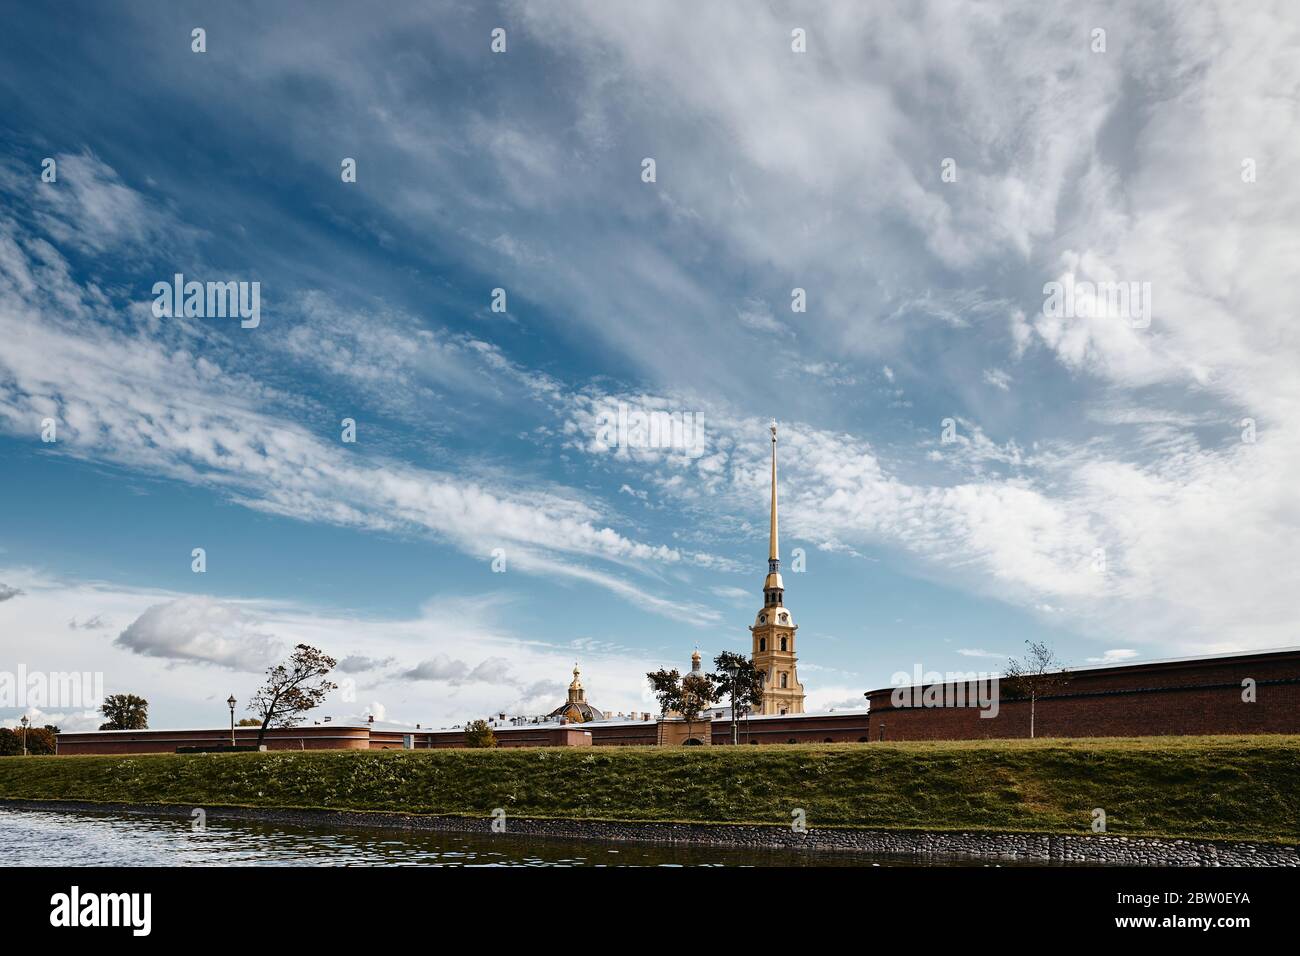 Architektur Panorama von St. Petersburg, Russland- Architektur Ensemble von Peter und Paul Festung und Neva Fluss in sonnigen Herbsttag. Herbstarchitektur Blick auf St. Petersburg Wahrzeichen bei sonnigem Wetter Stockfoto